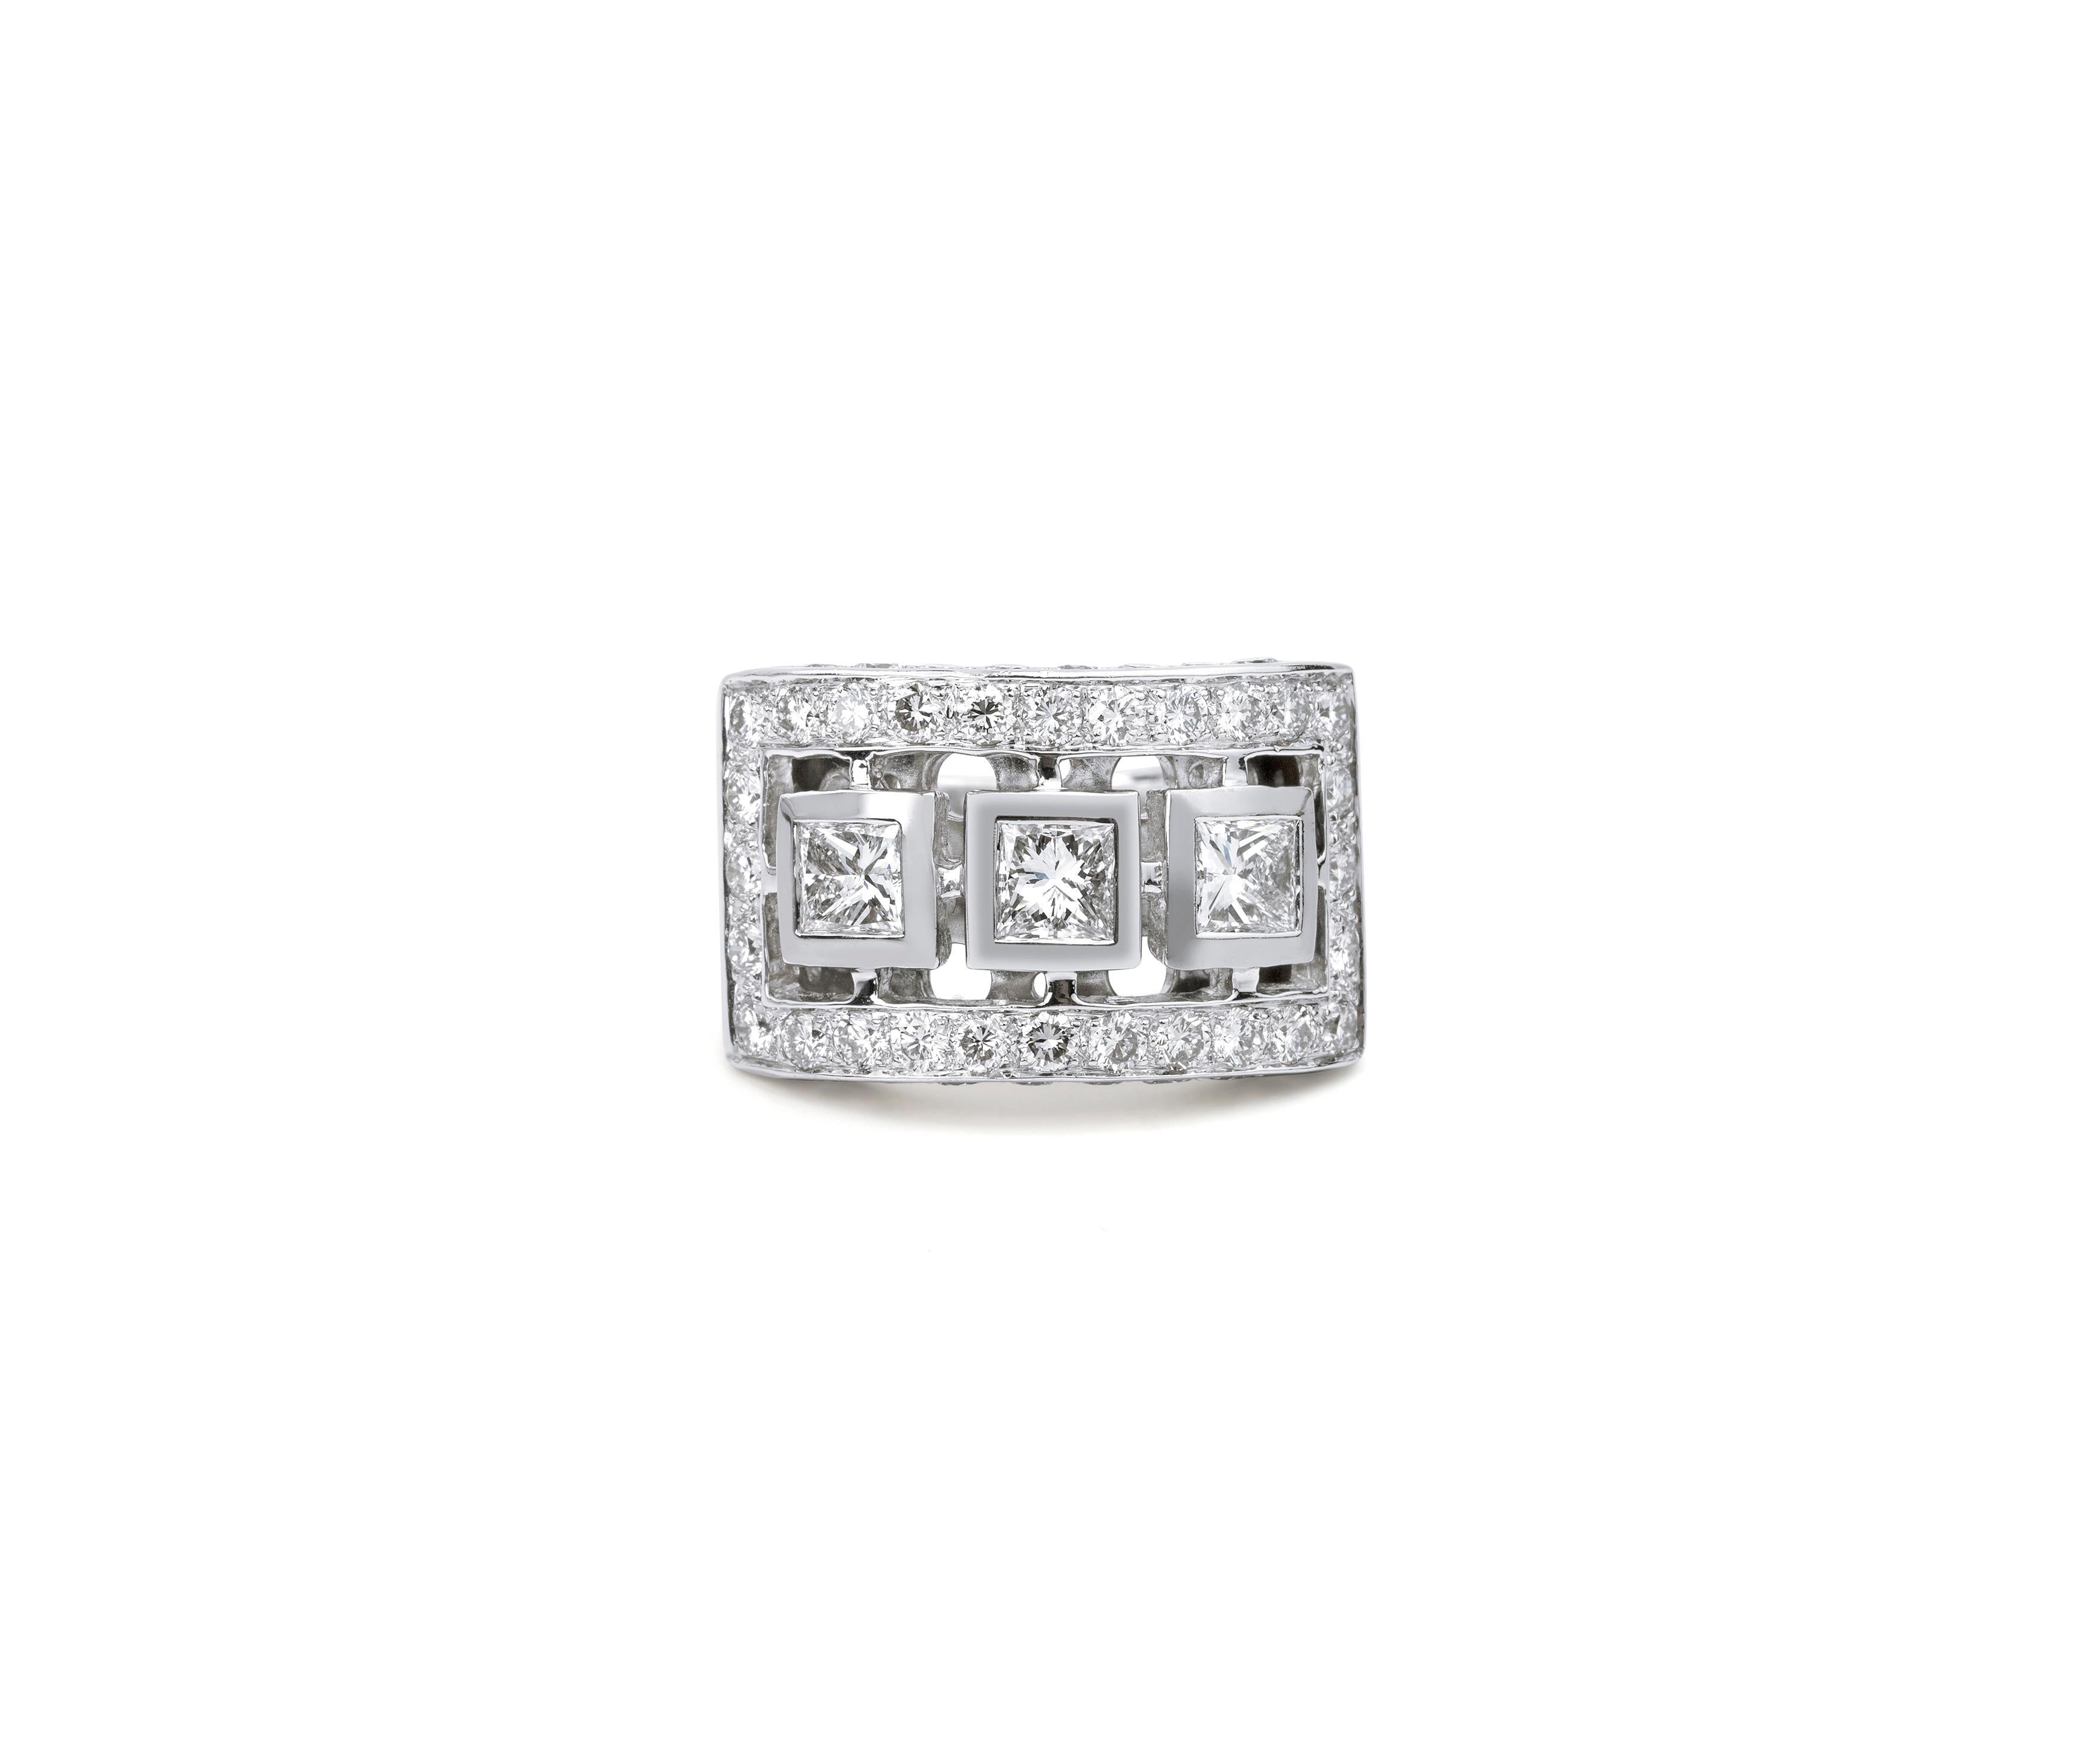 Princess Cut Diamond Statement Cocktail Ring 3ct Diamanten, Jahrestag Geschenk 

Erhältlich in 18 Karat Weißgold.

Das gleiche Design kann auch mit anderen Edelsteinen auf Anfrage hergestellt werden.

Einzelheiten zum Produkt:

- Massiv Gold

-